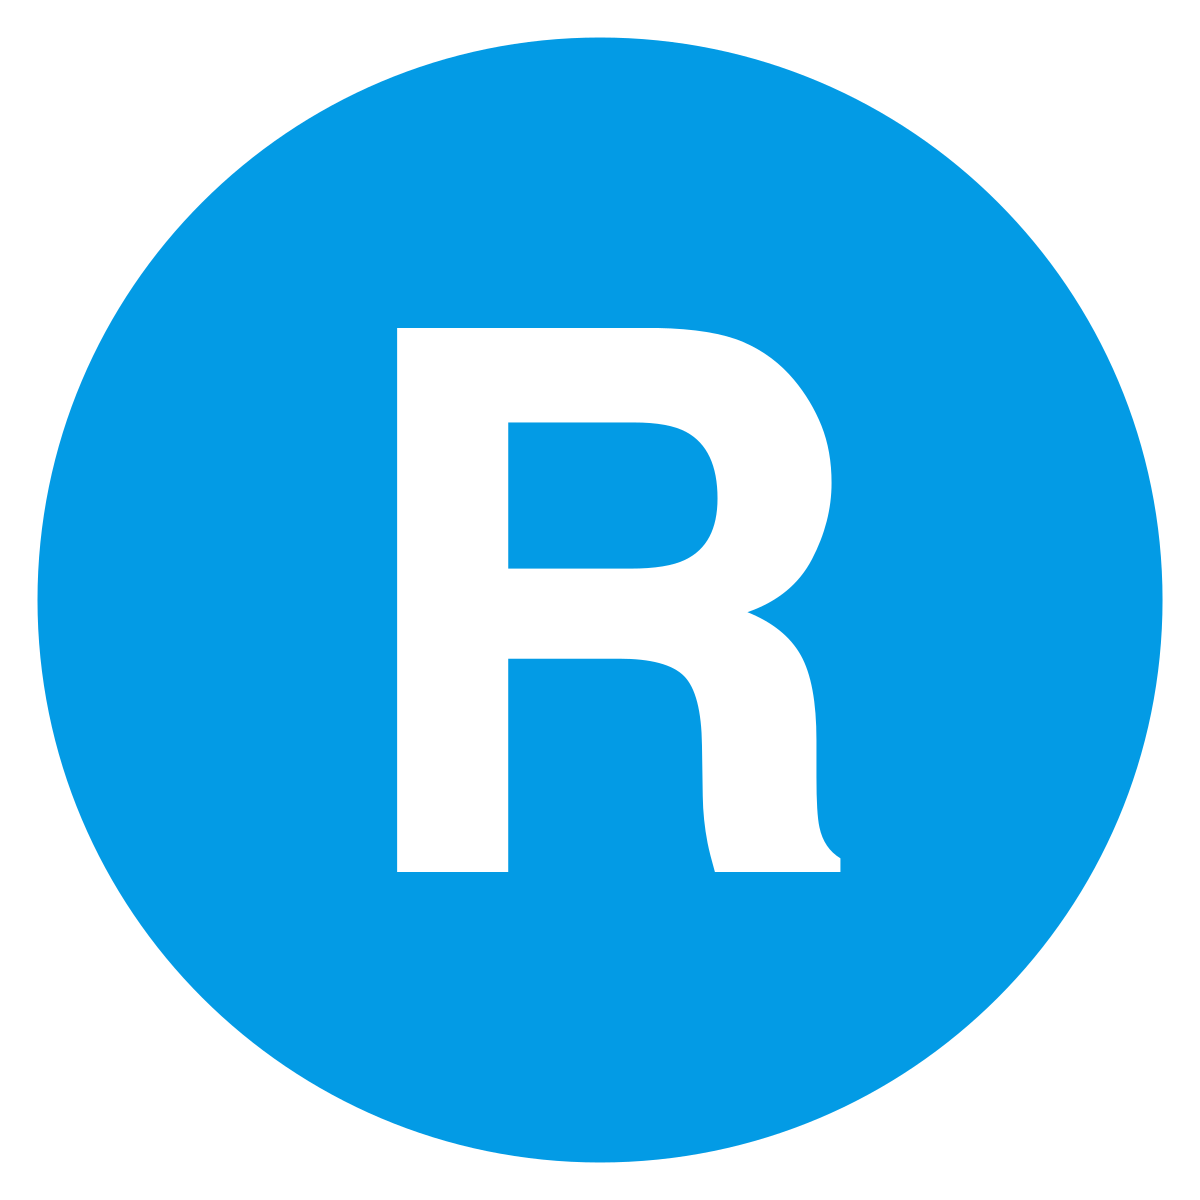 Hãy nhấp chuột để xem biểu tượng R ấn tượng và độc đáo, sẽ khiến cho thương hiệu của bạn nổi bật hơn trong đám đông.